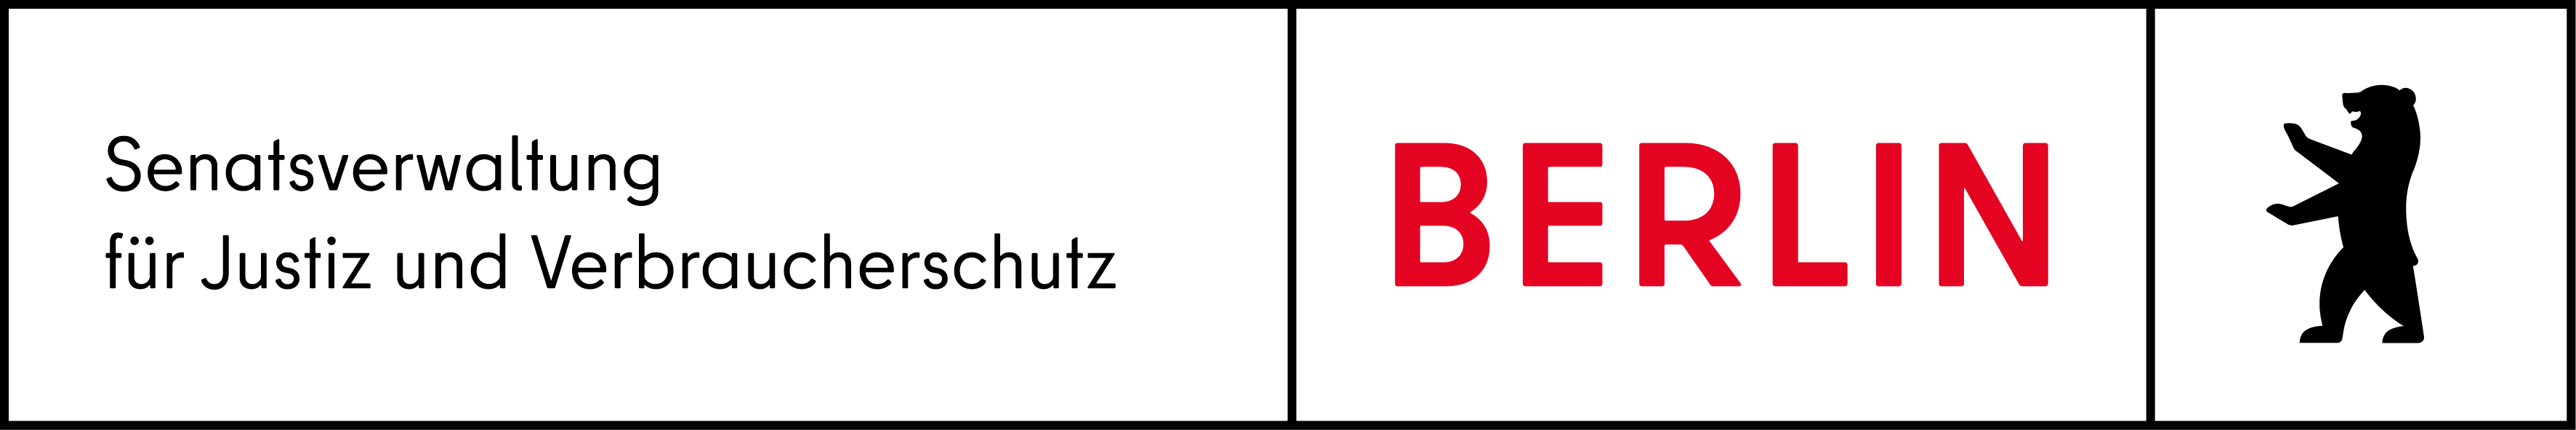 Логотип Senatsverwaltung Berlin für Justiz, Verbraucherschutz und Antidiskriminierung, на главную страницу)}